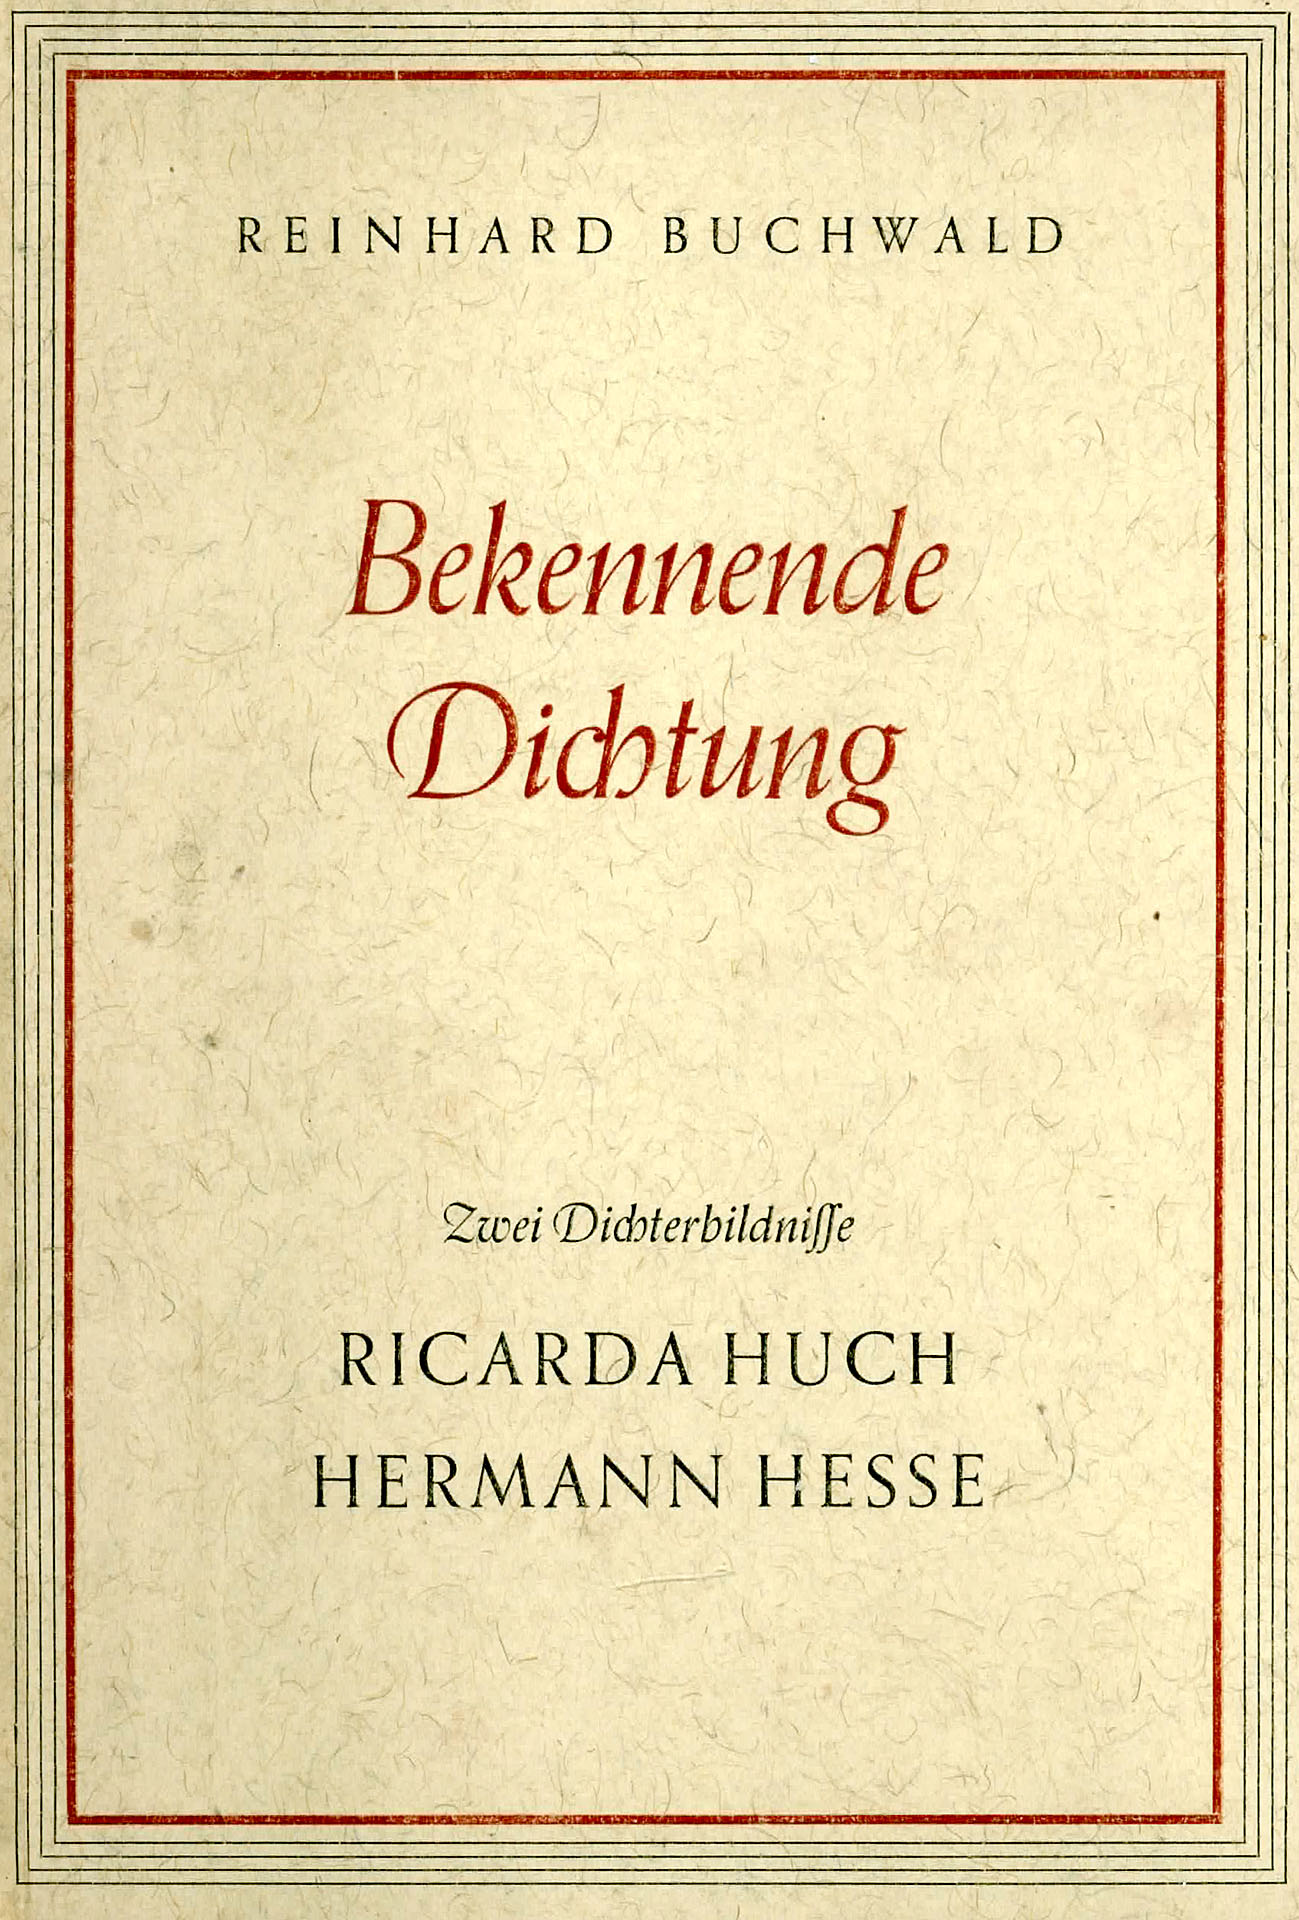 Bekennende Dichtung - Buchwald, Reinhard